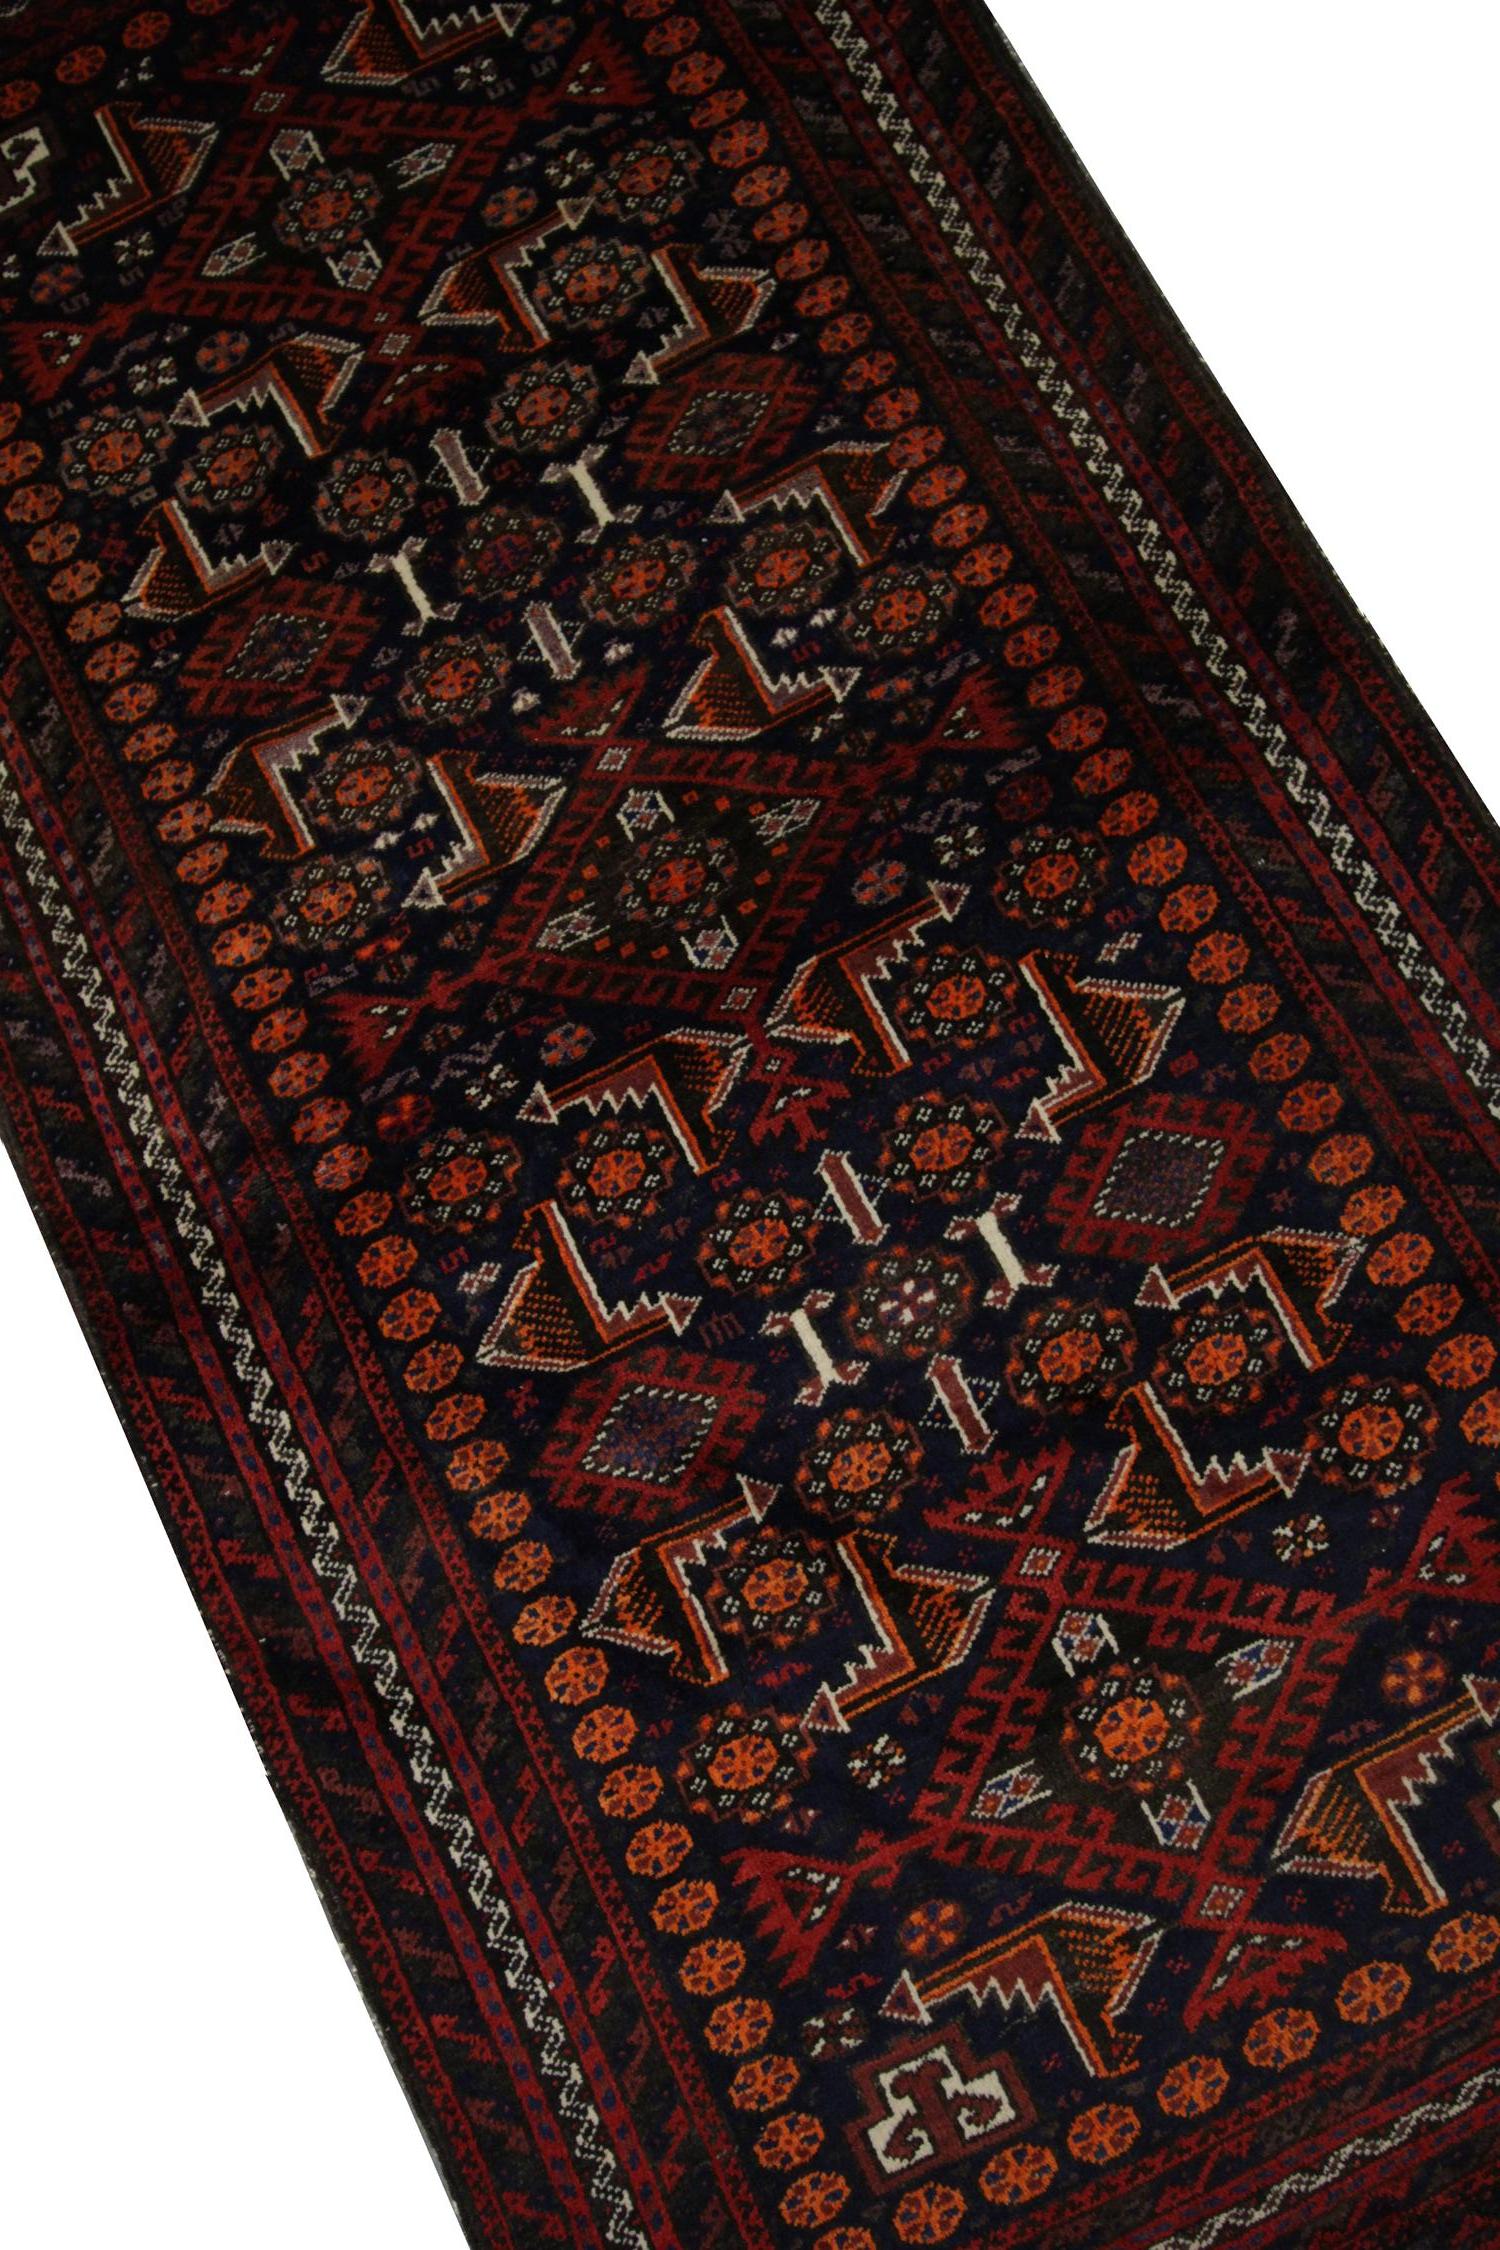 Hollywood Regency Vintage Tribal Area Rug, Handwoven Afghanistan Red Wool Carpet